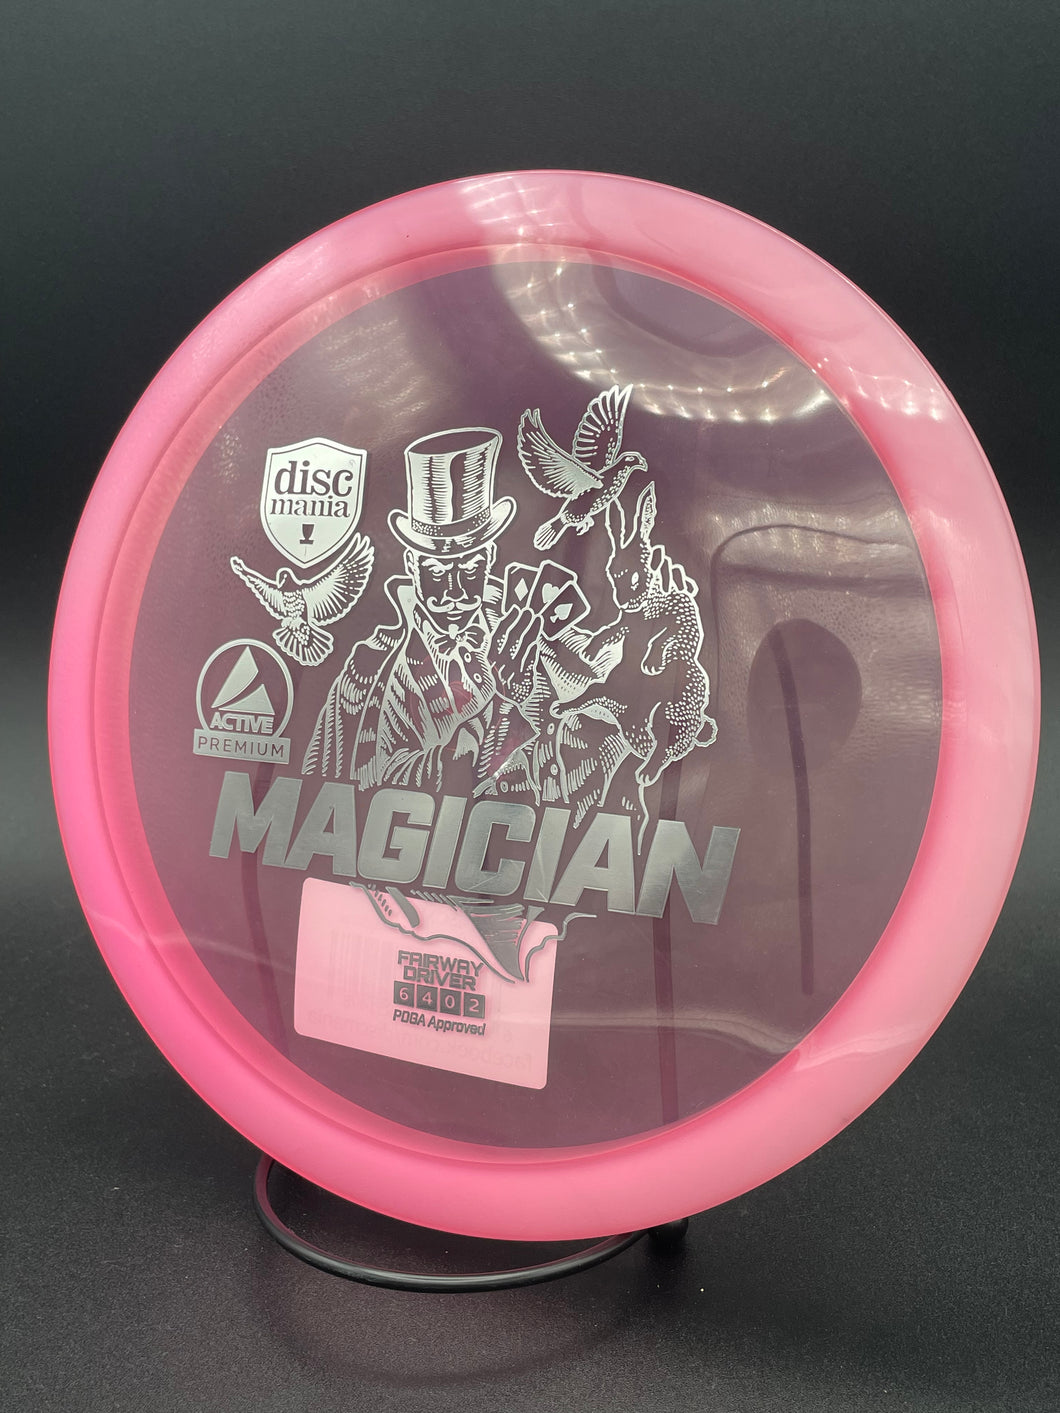 Magician / Discmania / Active Premium